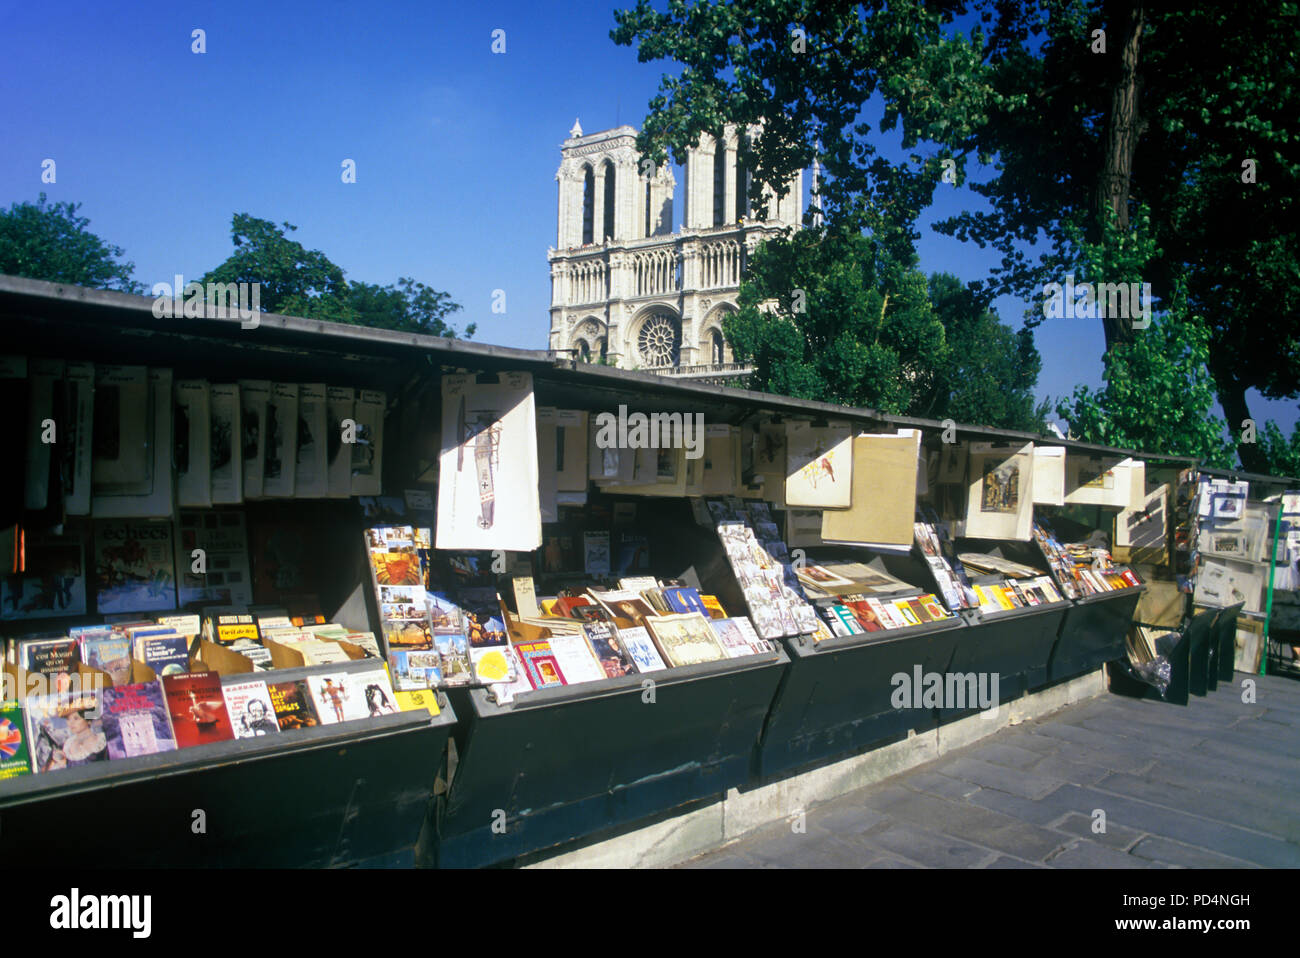 1987 HISTORICAL LES BOUQUINISTES DES QUAIS DE SEINE BOOK SELLER STALLS NOTRE DAME CATHEDRAL PARIS FRANCE Stock Photo